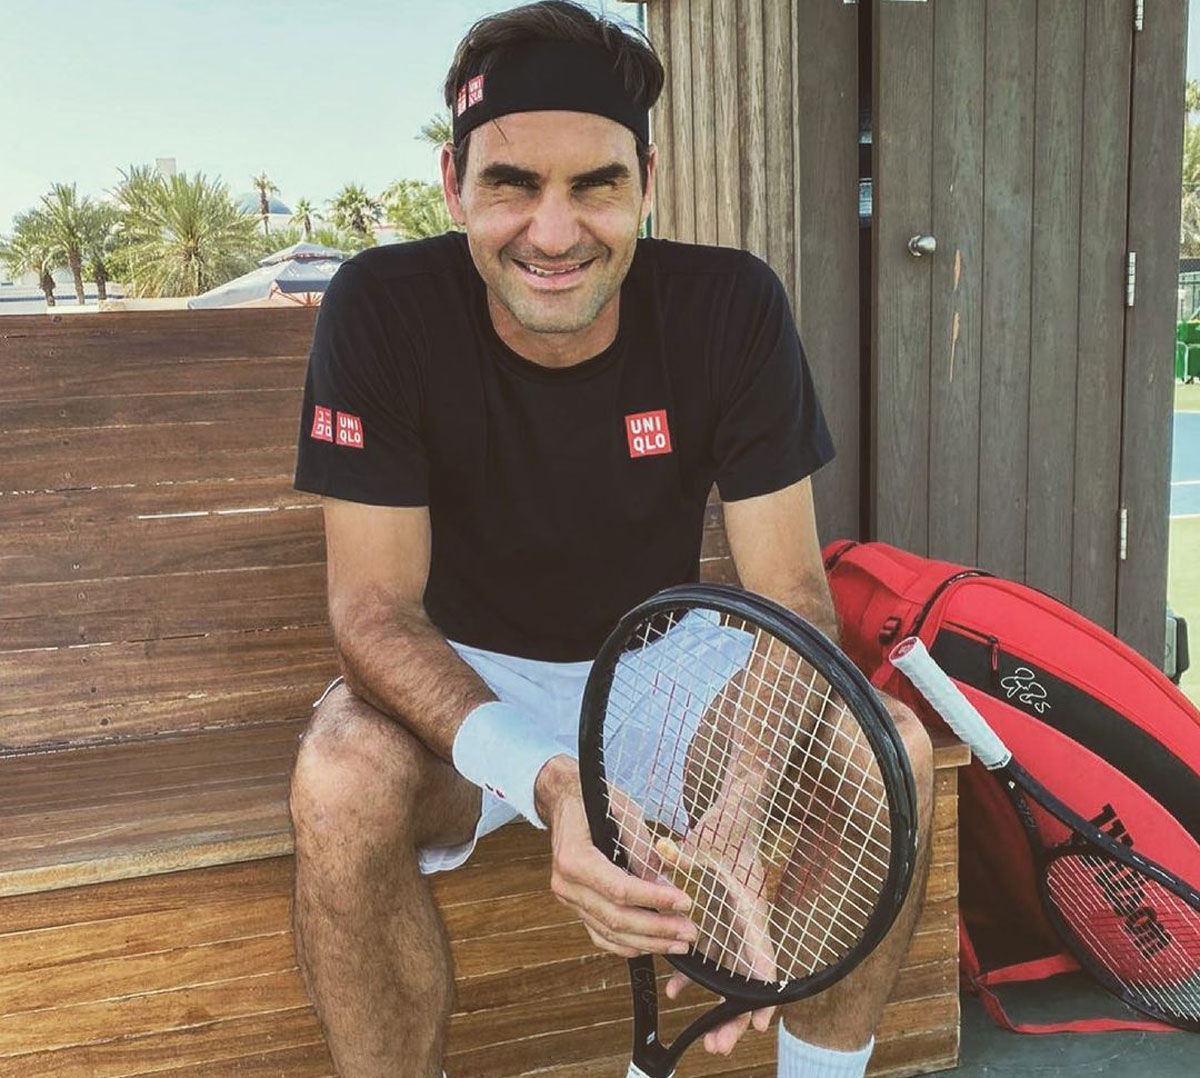 SEE: Roger Federer's classy goodbye